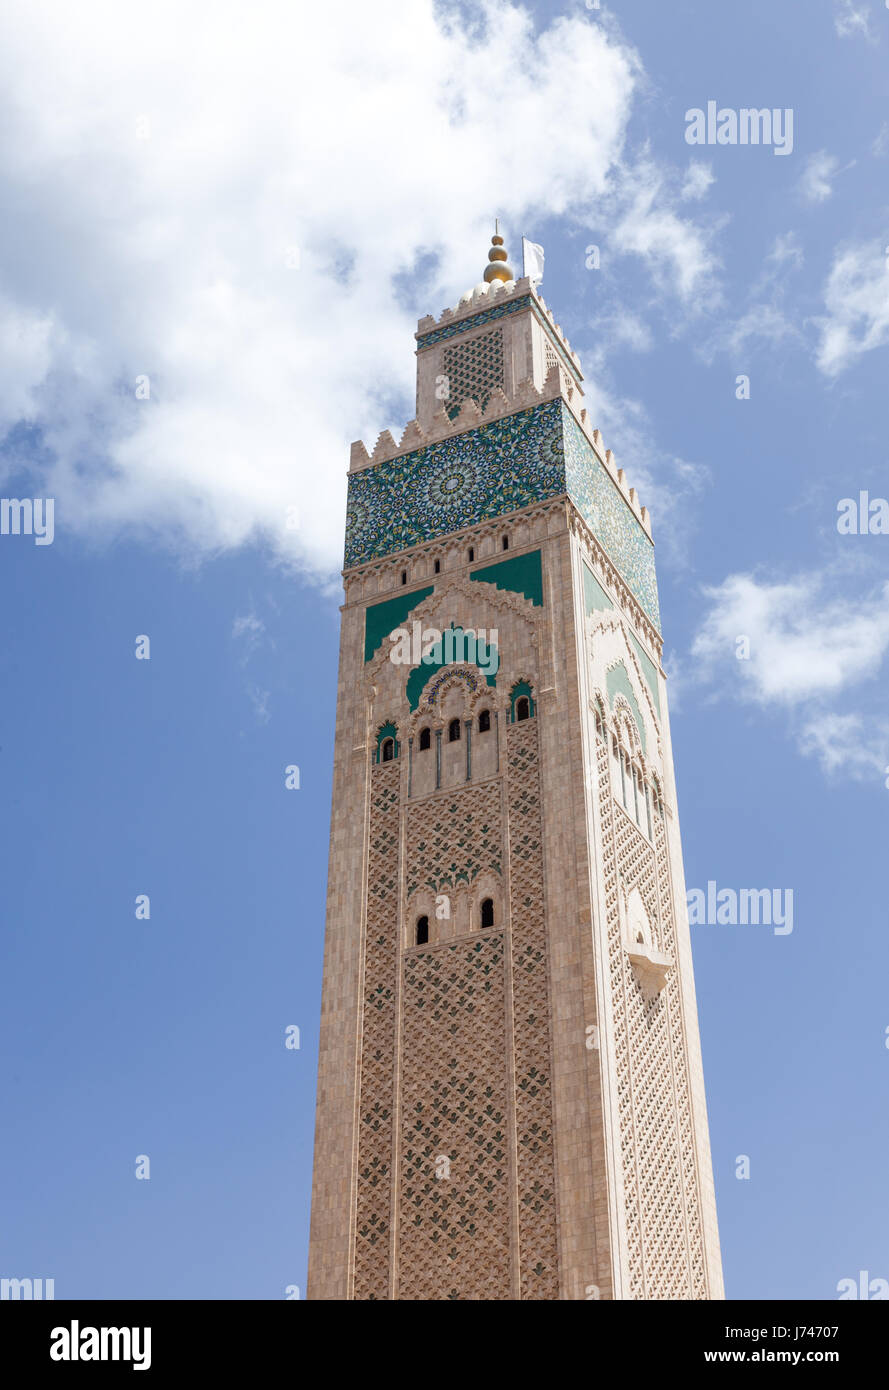 Hassan II Mosque in Casablanca Stock Photo